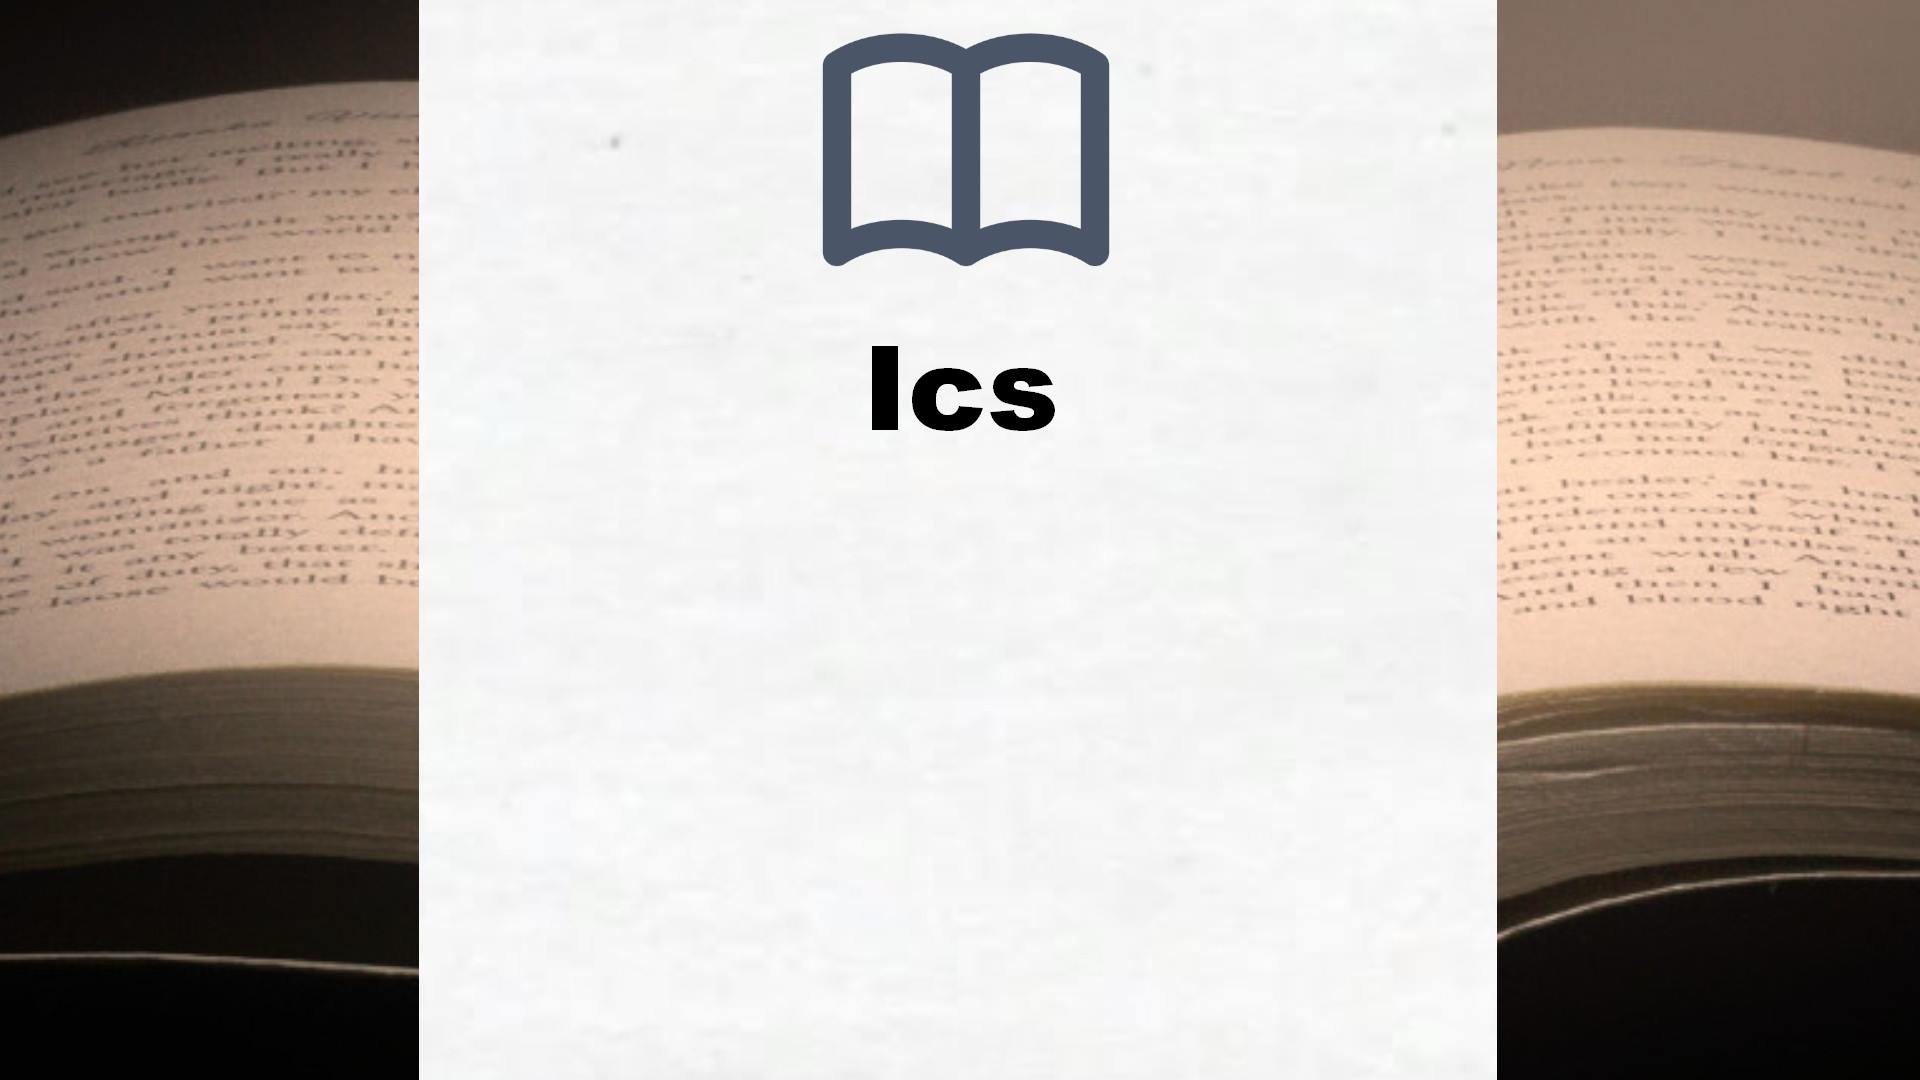 Bücher über Ics